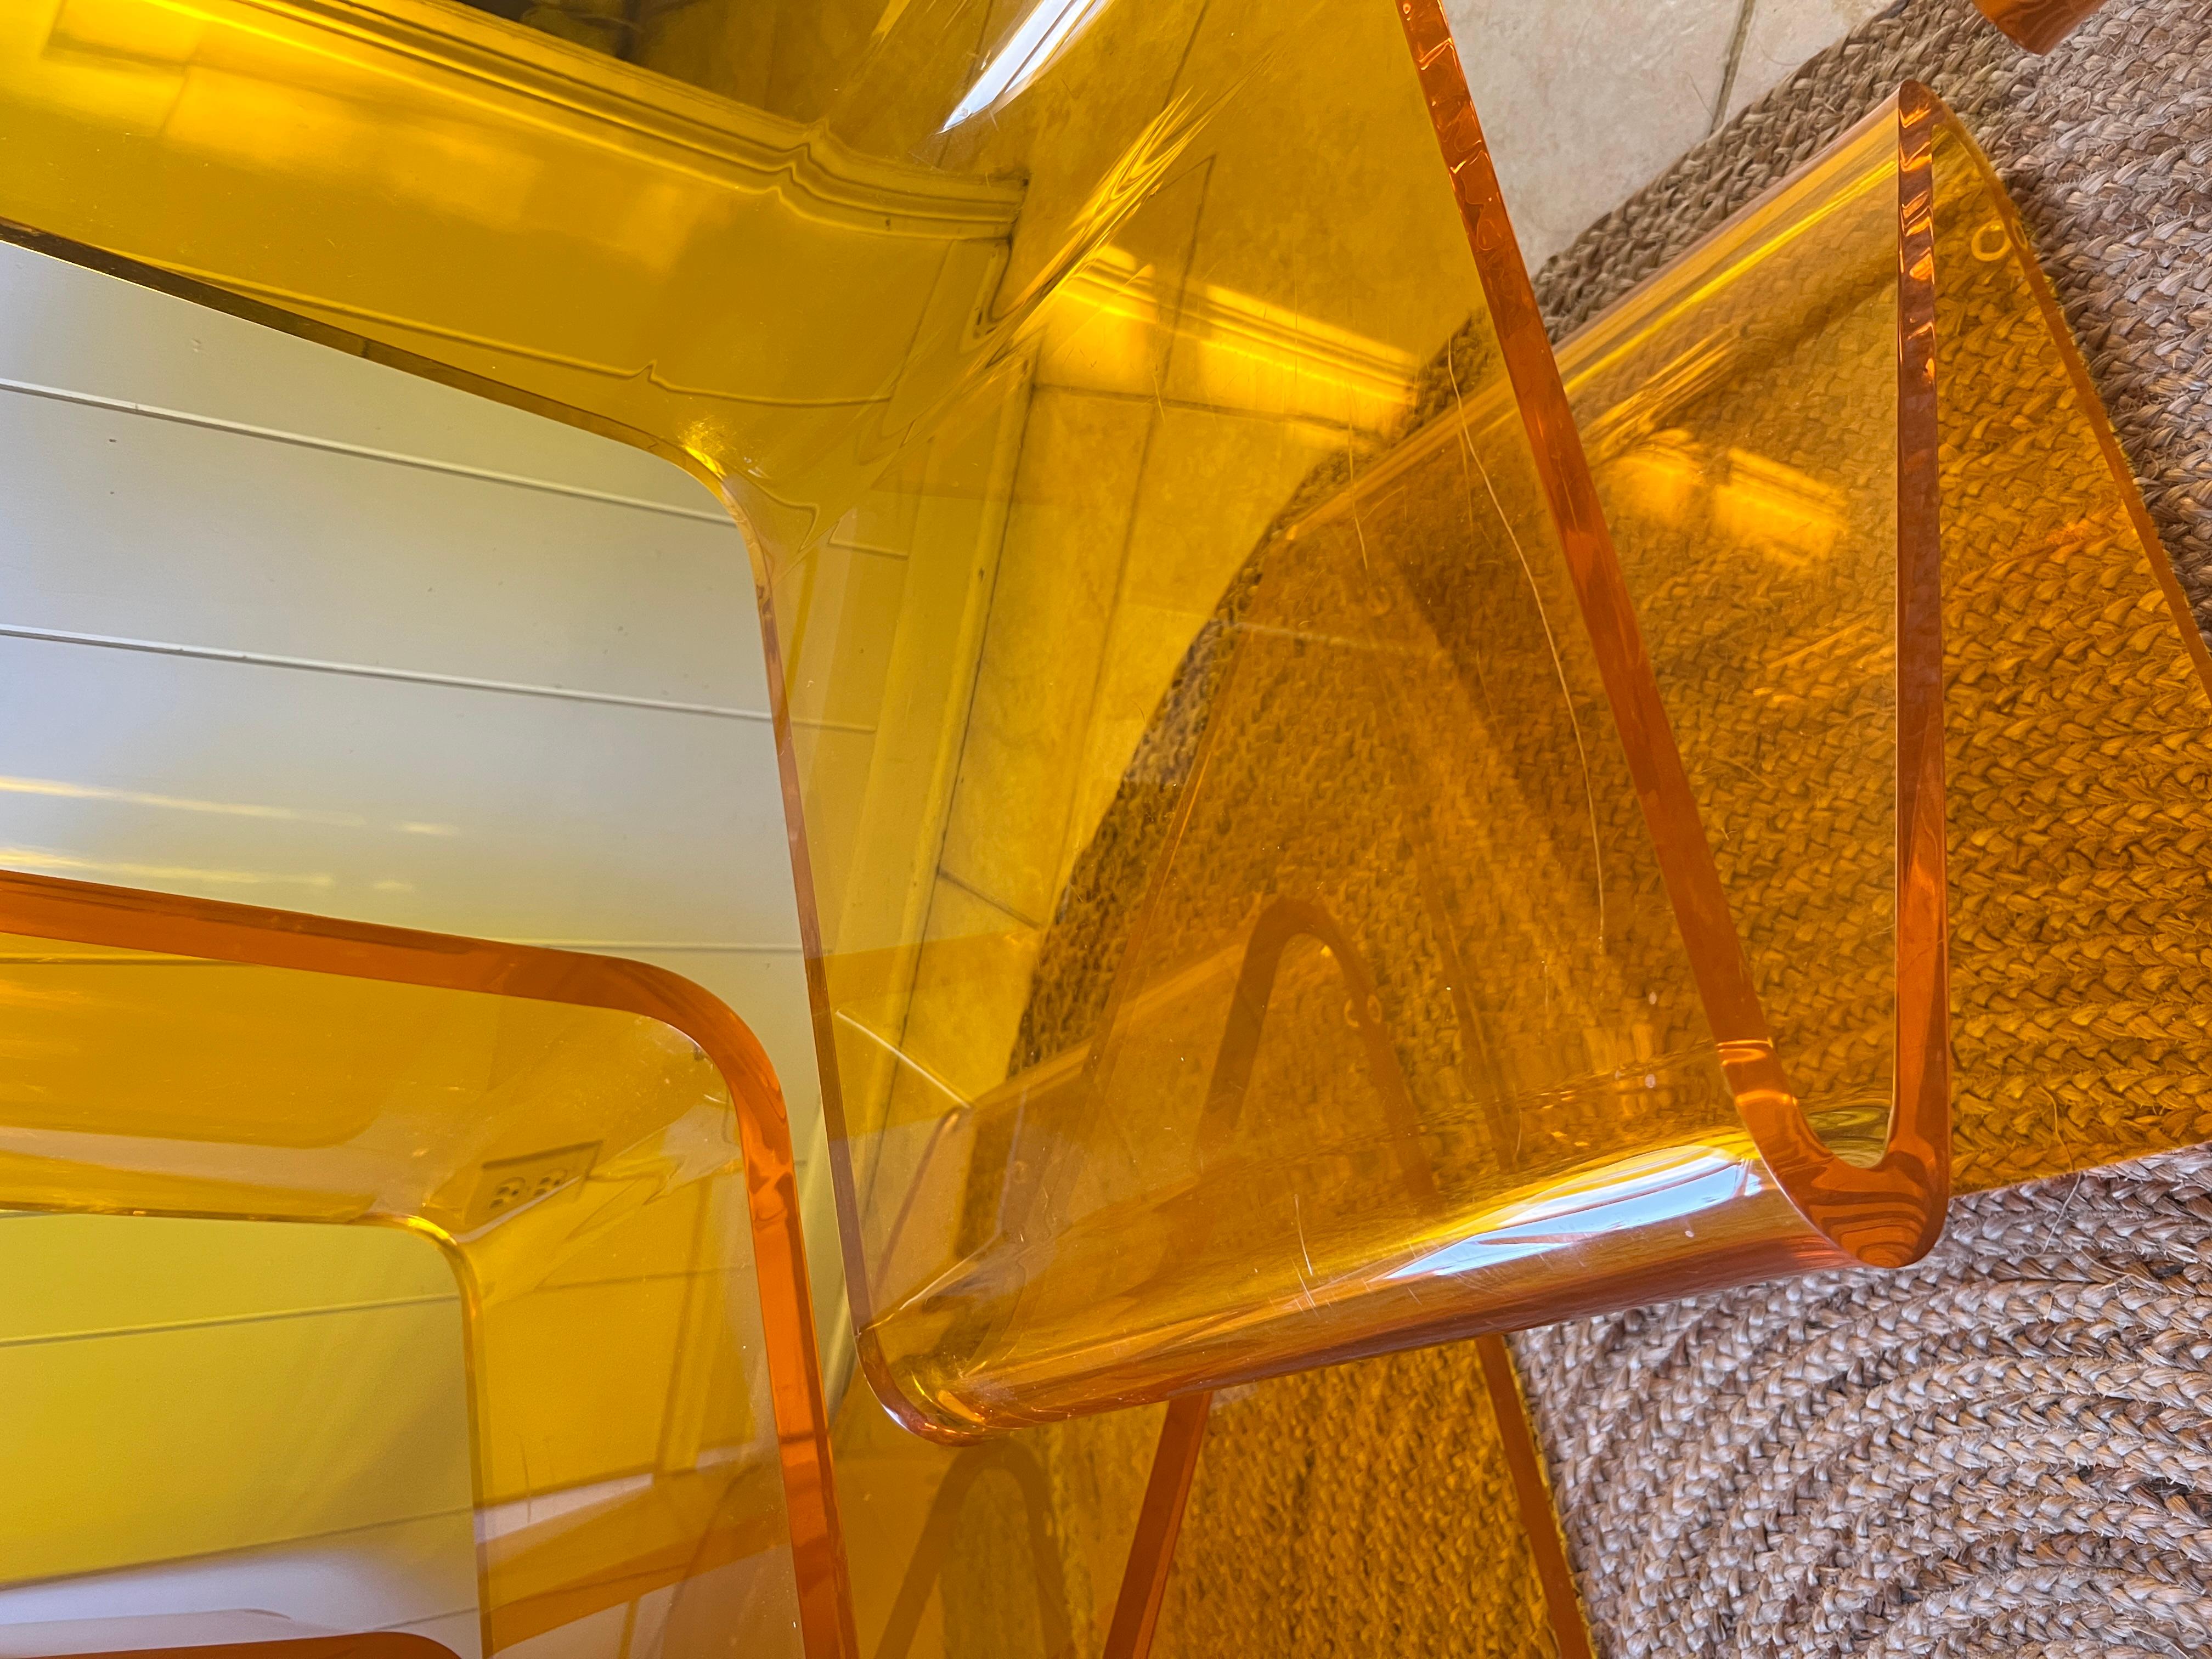 Conjunto de cuatro sillas Z de Haziza en color naranja. La Silla Z es reconocida por su forma arquitectónica, su color atrevido y su resistente Lucite. En lucita de la más alta calidad y 2,5 cm de grosor, la silla Z consigue encajar a la perfección